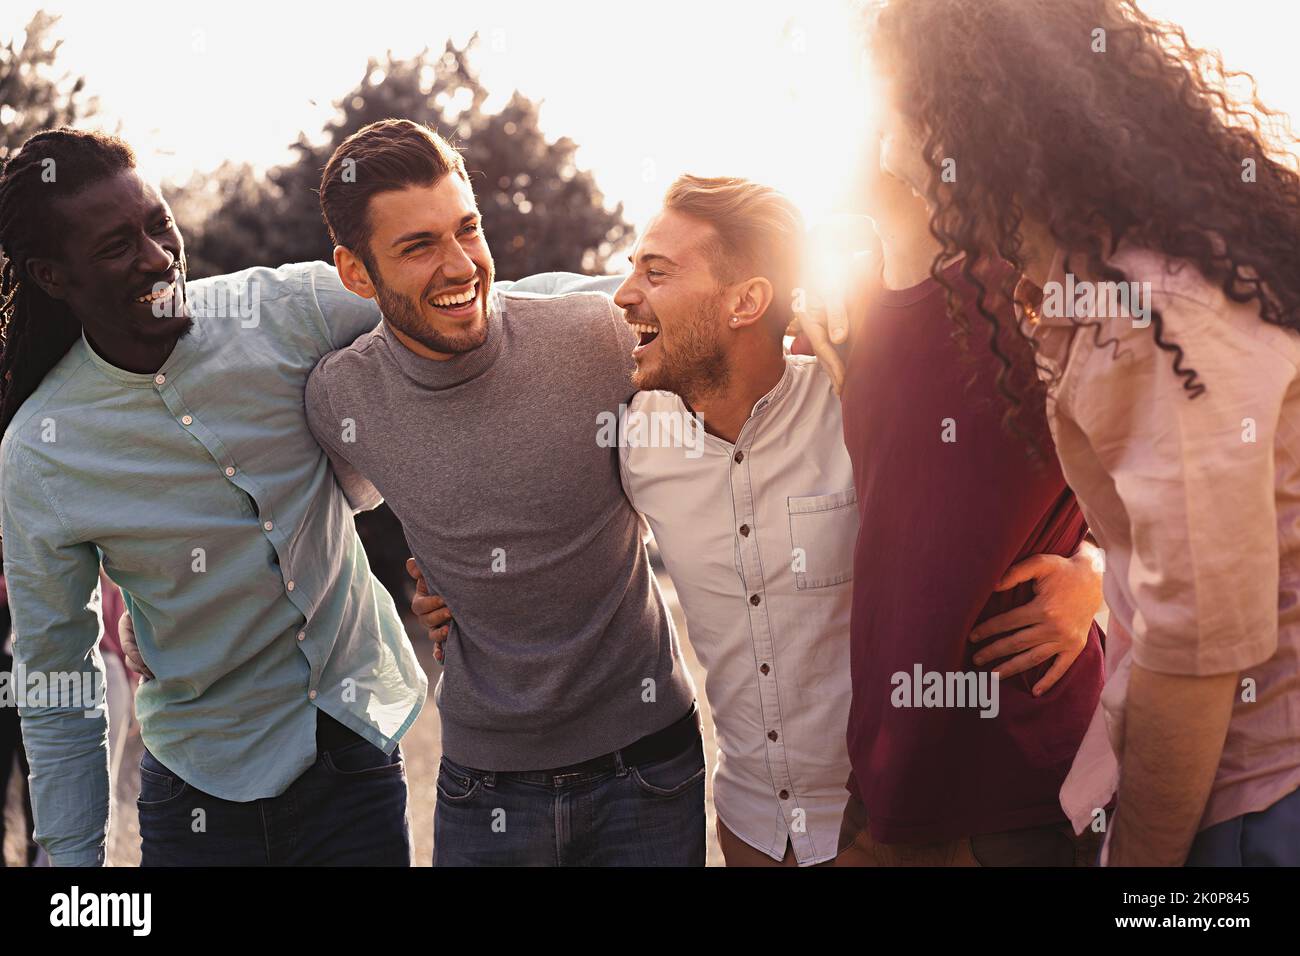 Multiethnische Gruppe positiver Freunde, die sich im Freien umarmen und Spaß haben. Junge lächelnde Menschen, die zusammen lachen, genießen die Gemeinschaft - fröhliche Jahrtausende Stockfoto